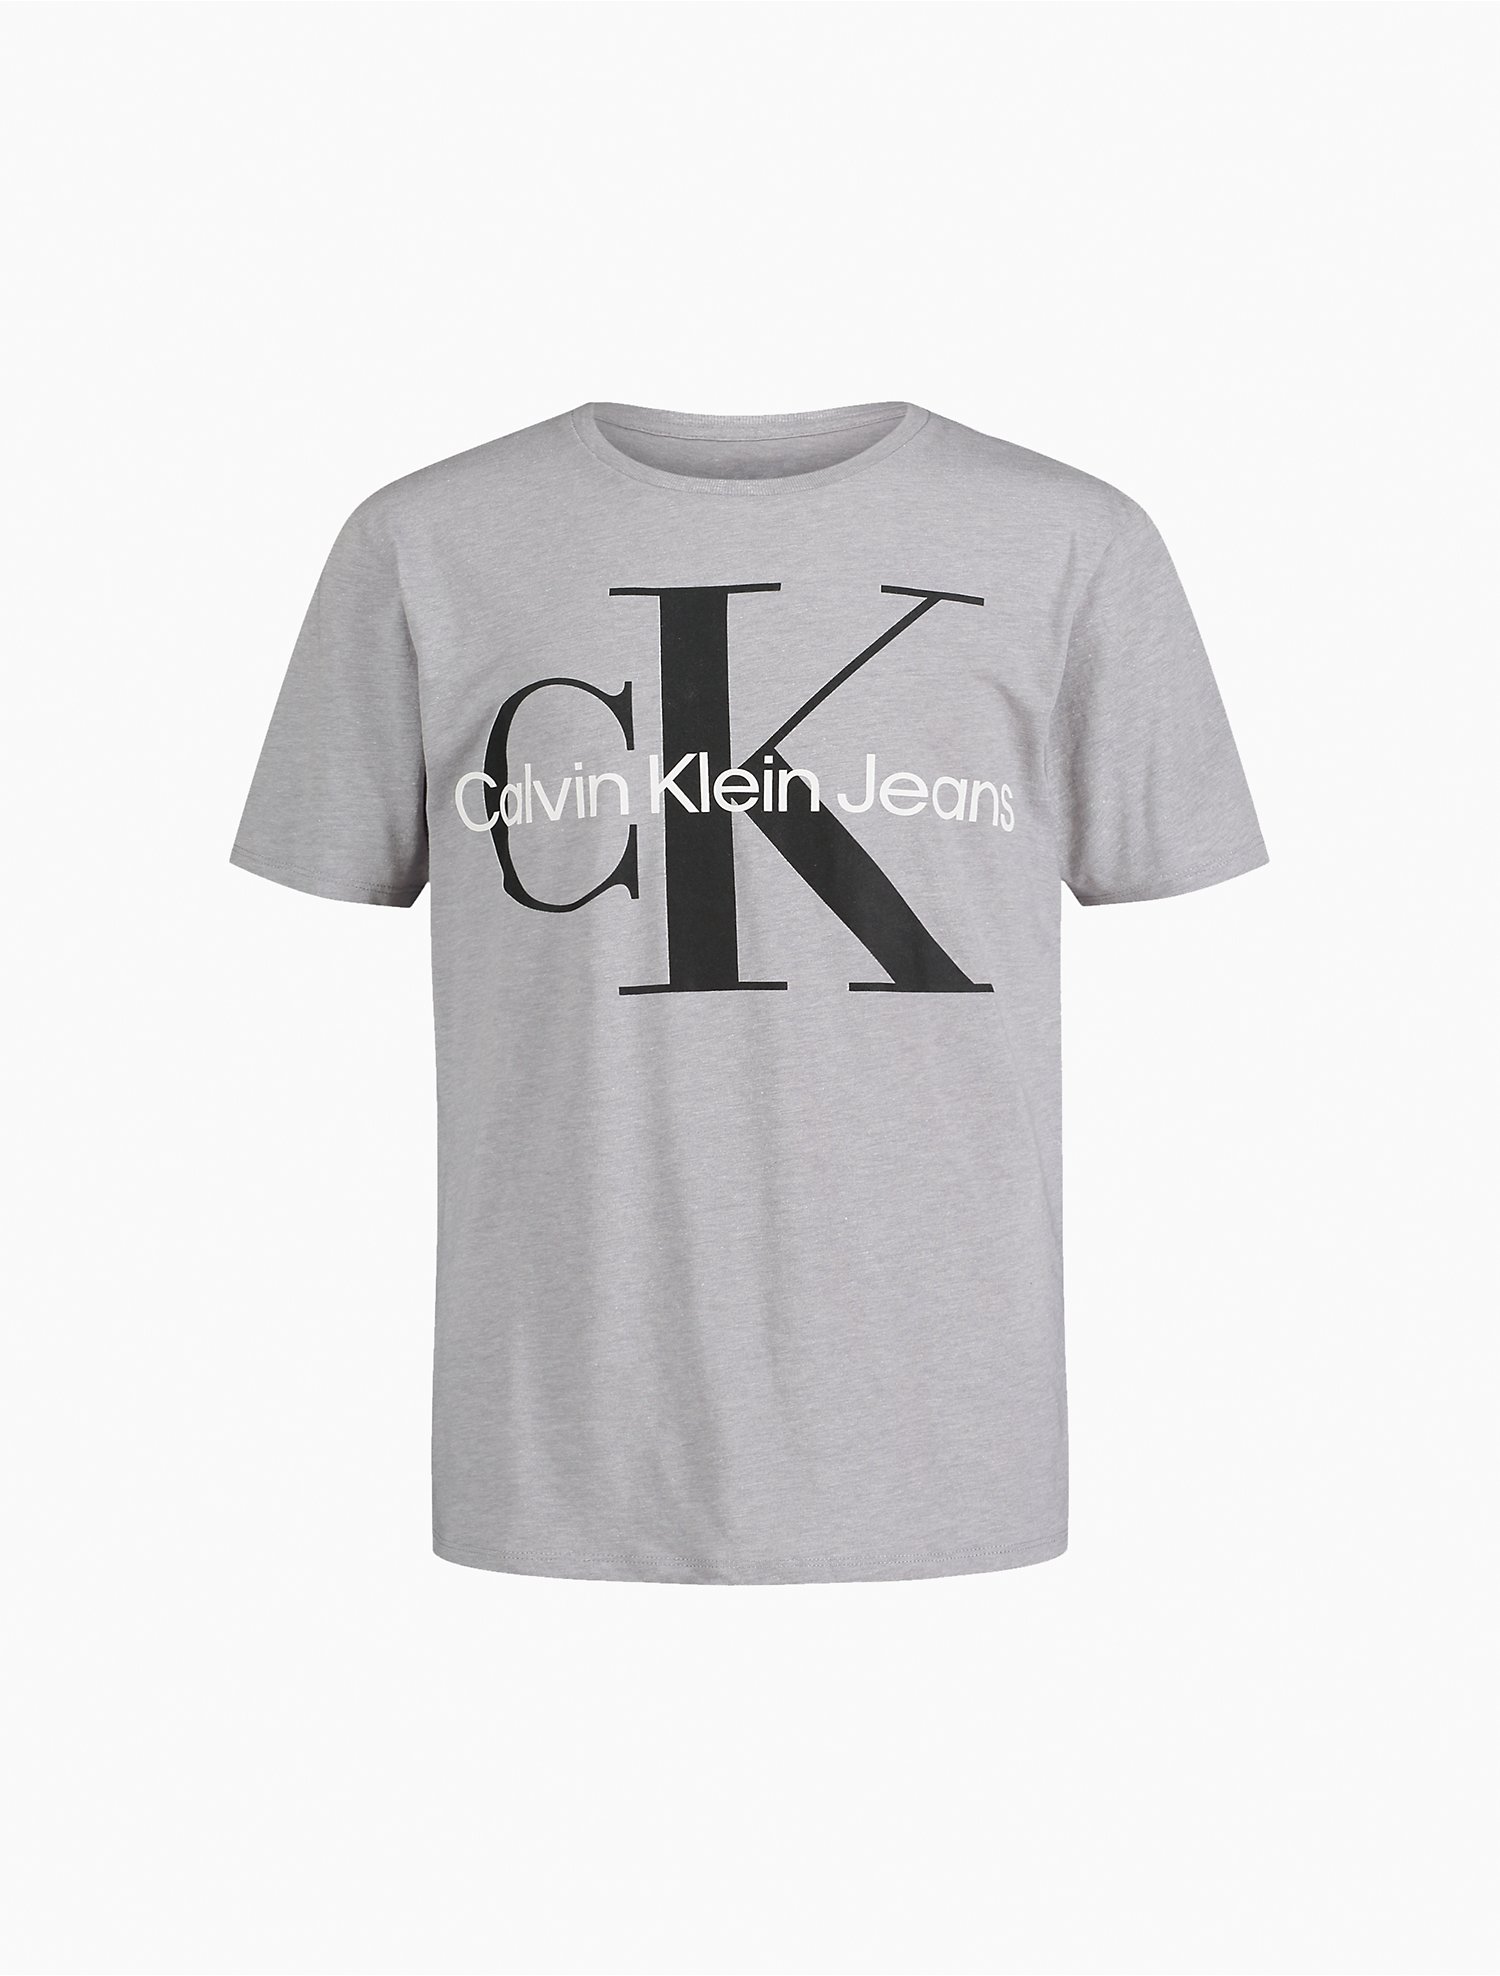 Boys Crewneck T-Shirt Calvin Klein